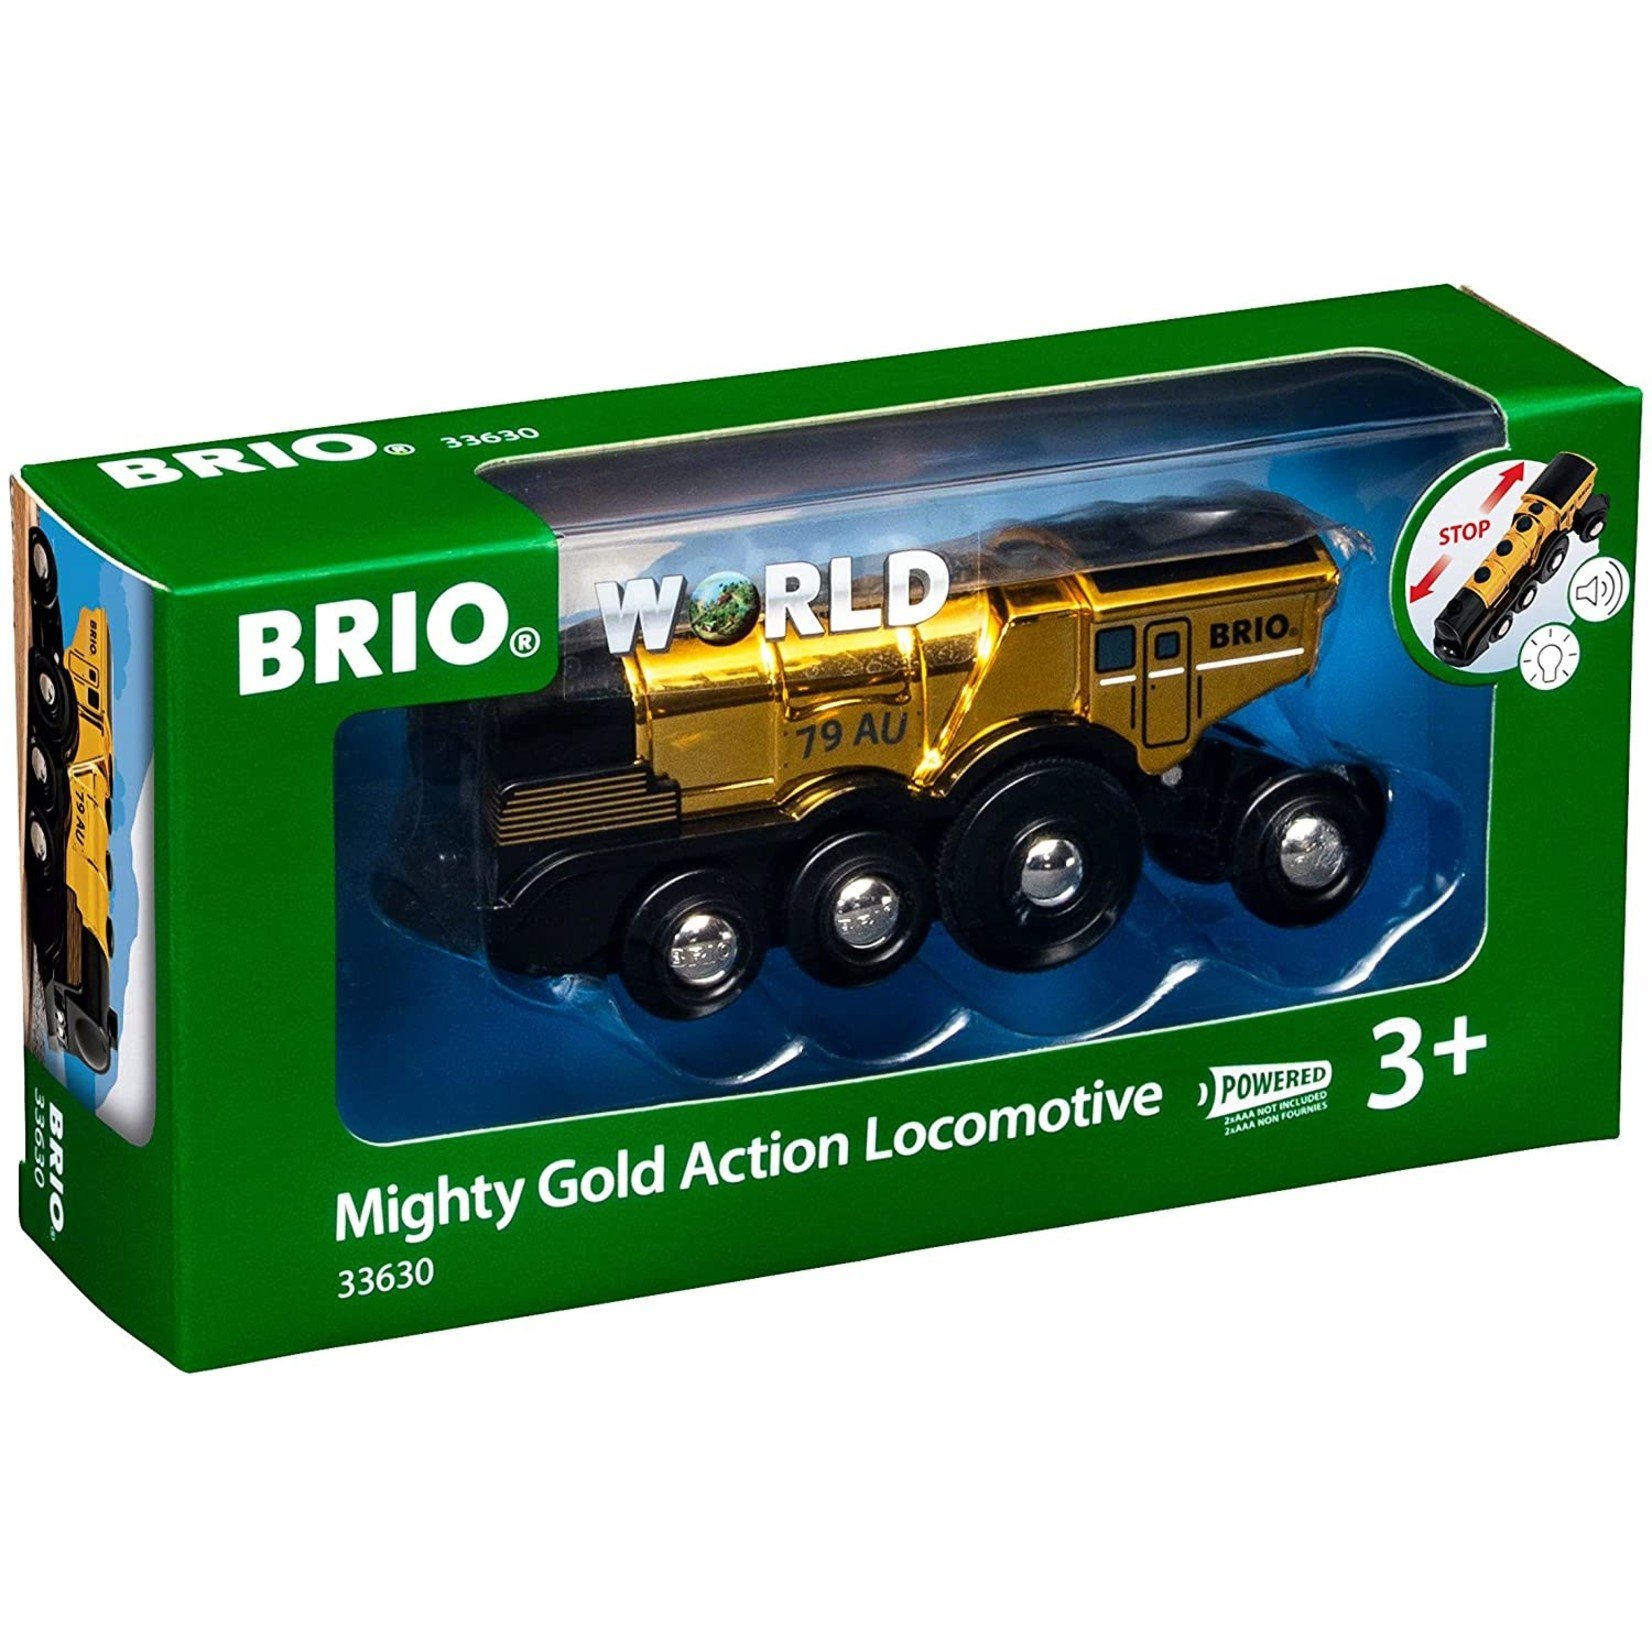 BRIO MIGHTY GOLD ACTION LOCOMOTIVE